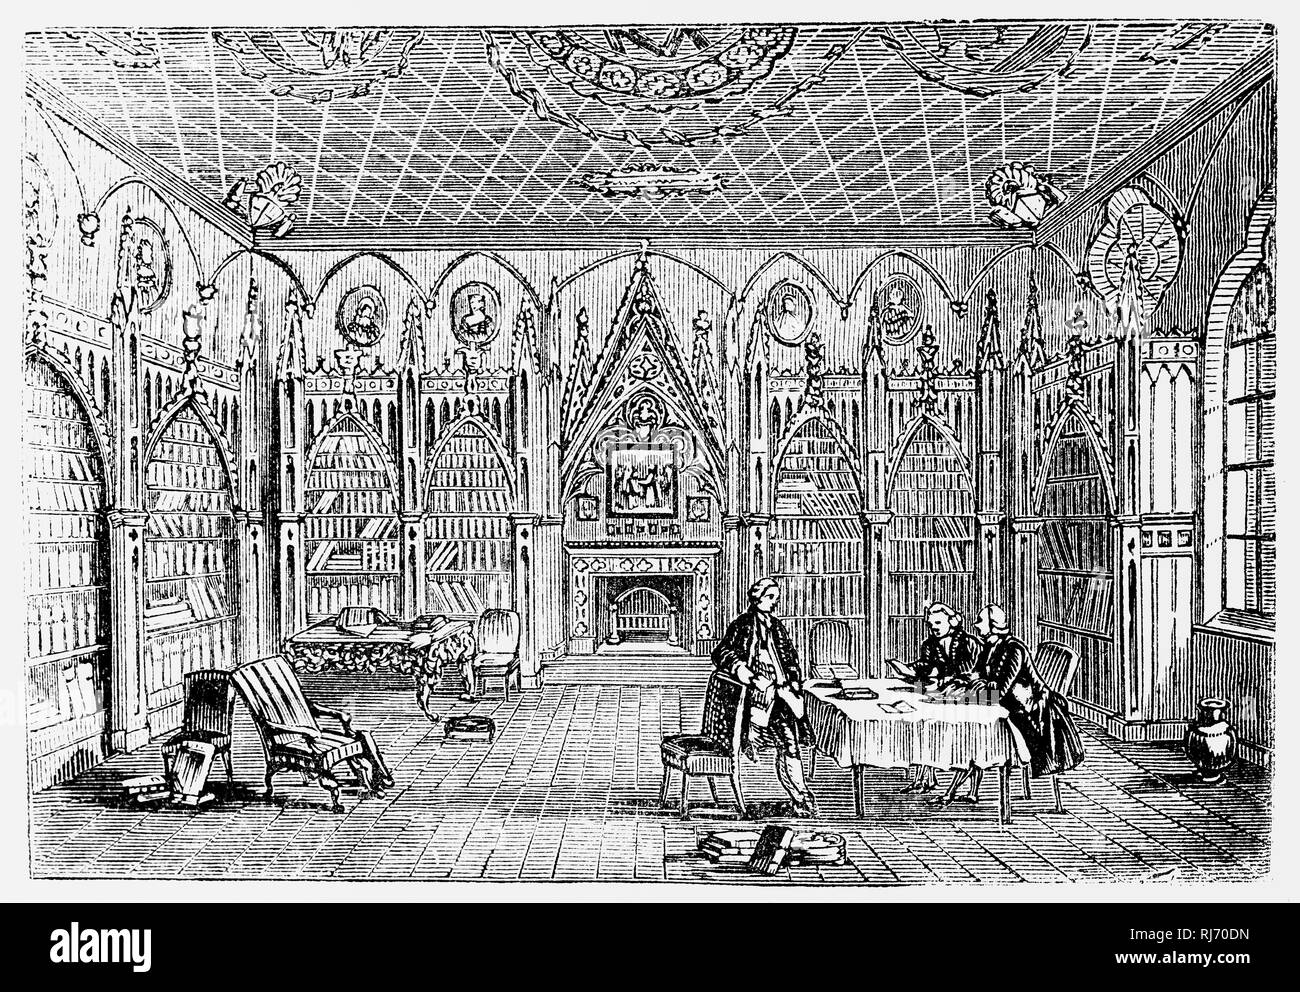 La galleria di Strawberry Hill House costruito a Twickenham, a sud-ovest di Londra, ravvivare lo stile gotico alcuni decenni prima di Victorian successori. Fu costruito da Orazio Walpole, 4° Conte di Orford (1717-1797), noto anche come Horace Walpole, il figlio del primo Primo Ministro britannico Sir Robert Walpole, fu uomo politico whig, storico dell'arte, uomo di lettere, antiquario e una scrittrice inglese la cui fama letteraria si appoggia sul primo romanzo gotico, il castello di Otranto (1764), e le sue lettere, che sono dei vantaggi sociali e interessi politici. Foto Stock